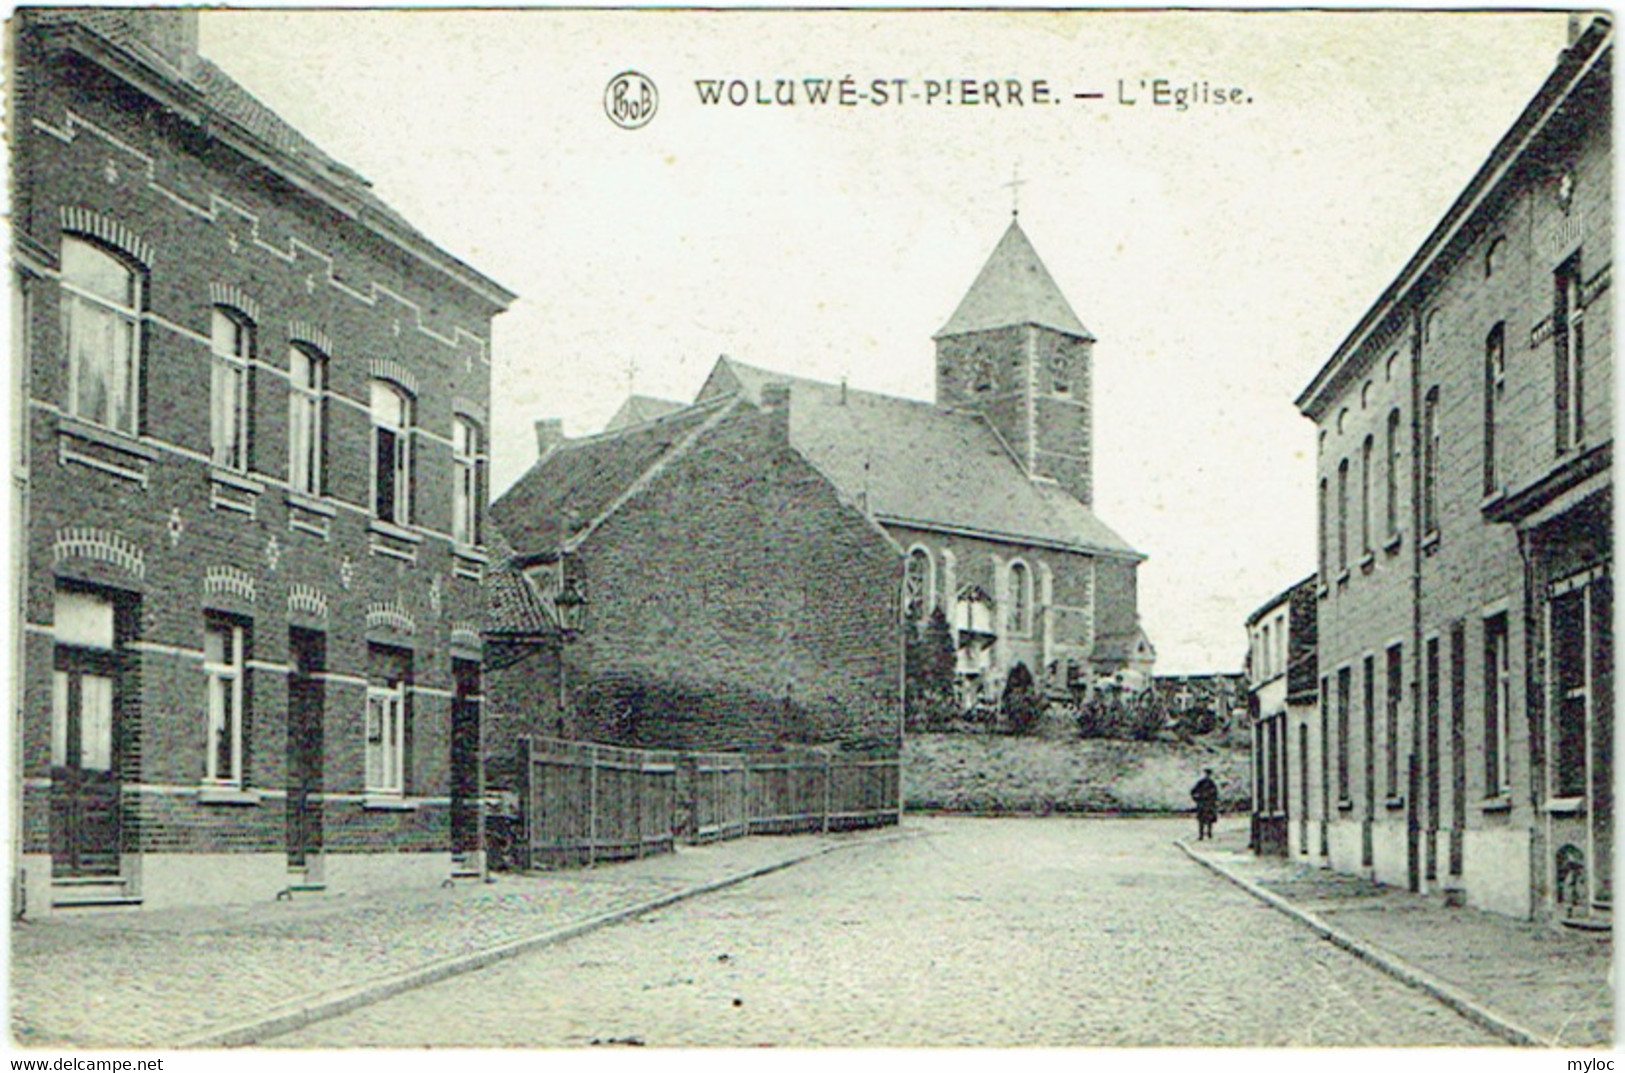 Woluwé-St-Pierre. Eglise. - Woluwe-St-Pierre - St-Pieters-Woluwe